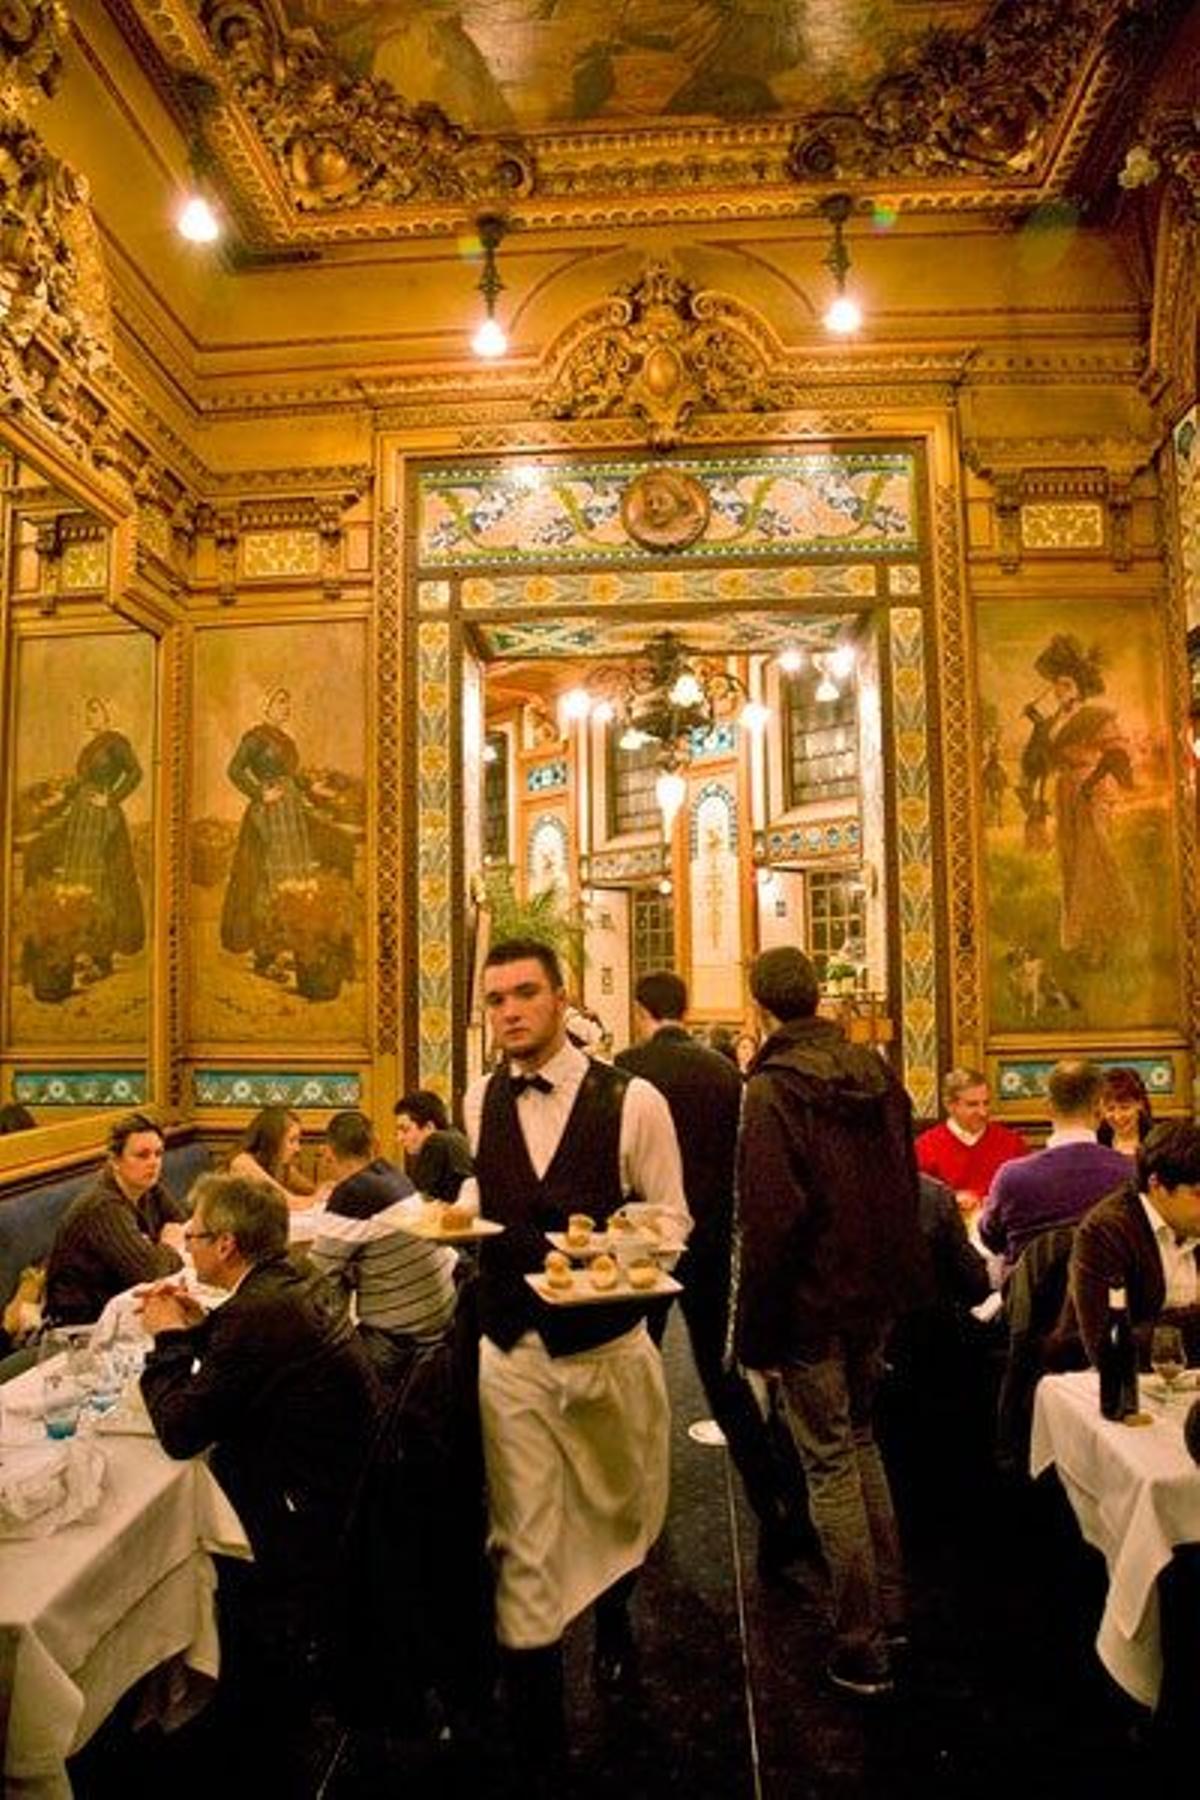 La Cigale, restaurante de estilo art nouveau inaugurado en el año 1895.